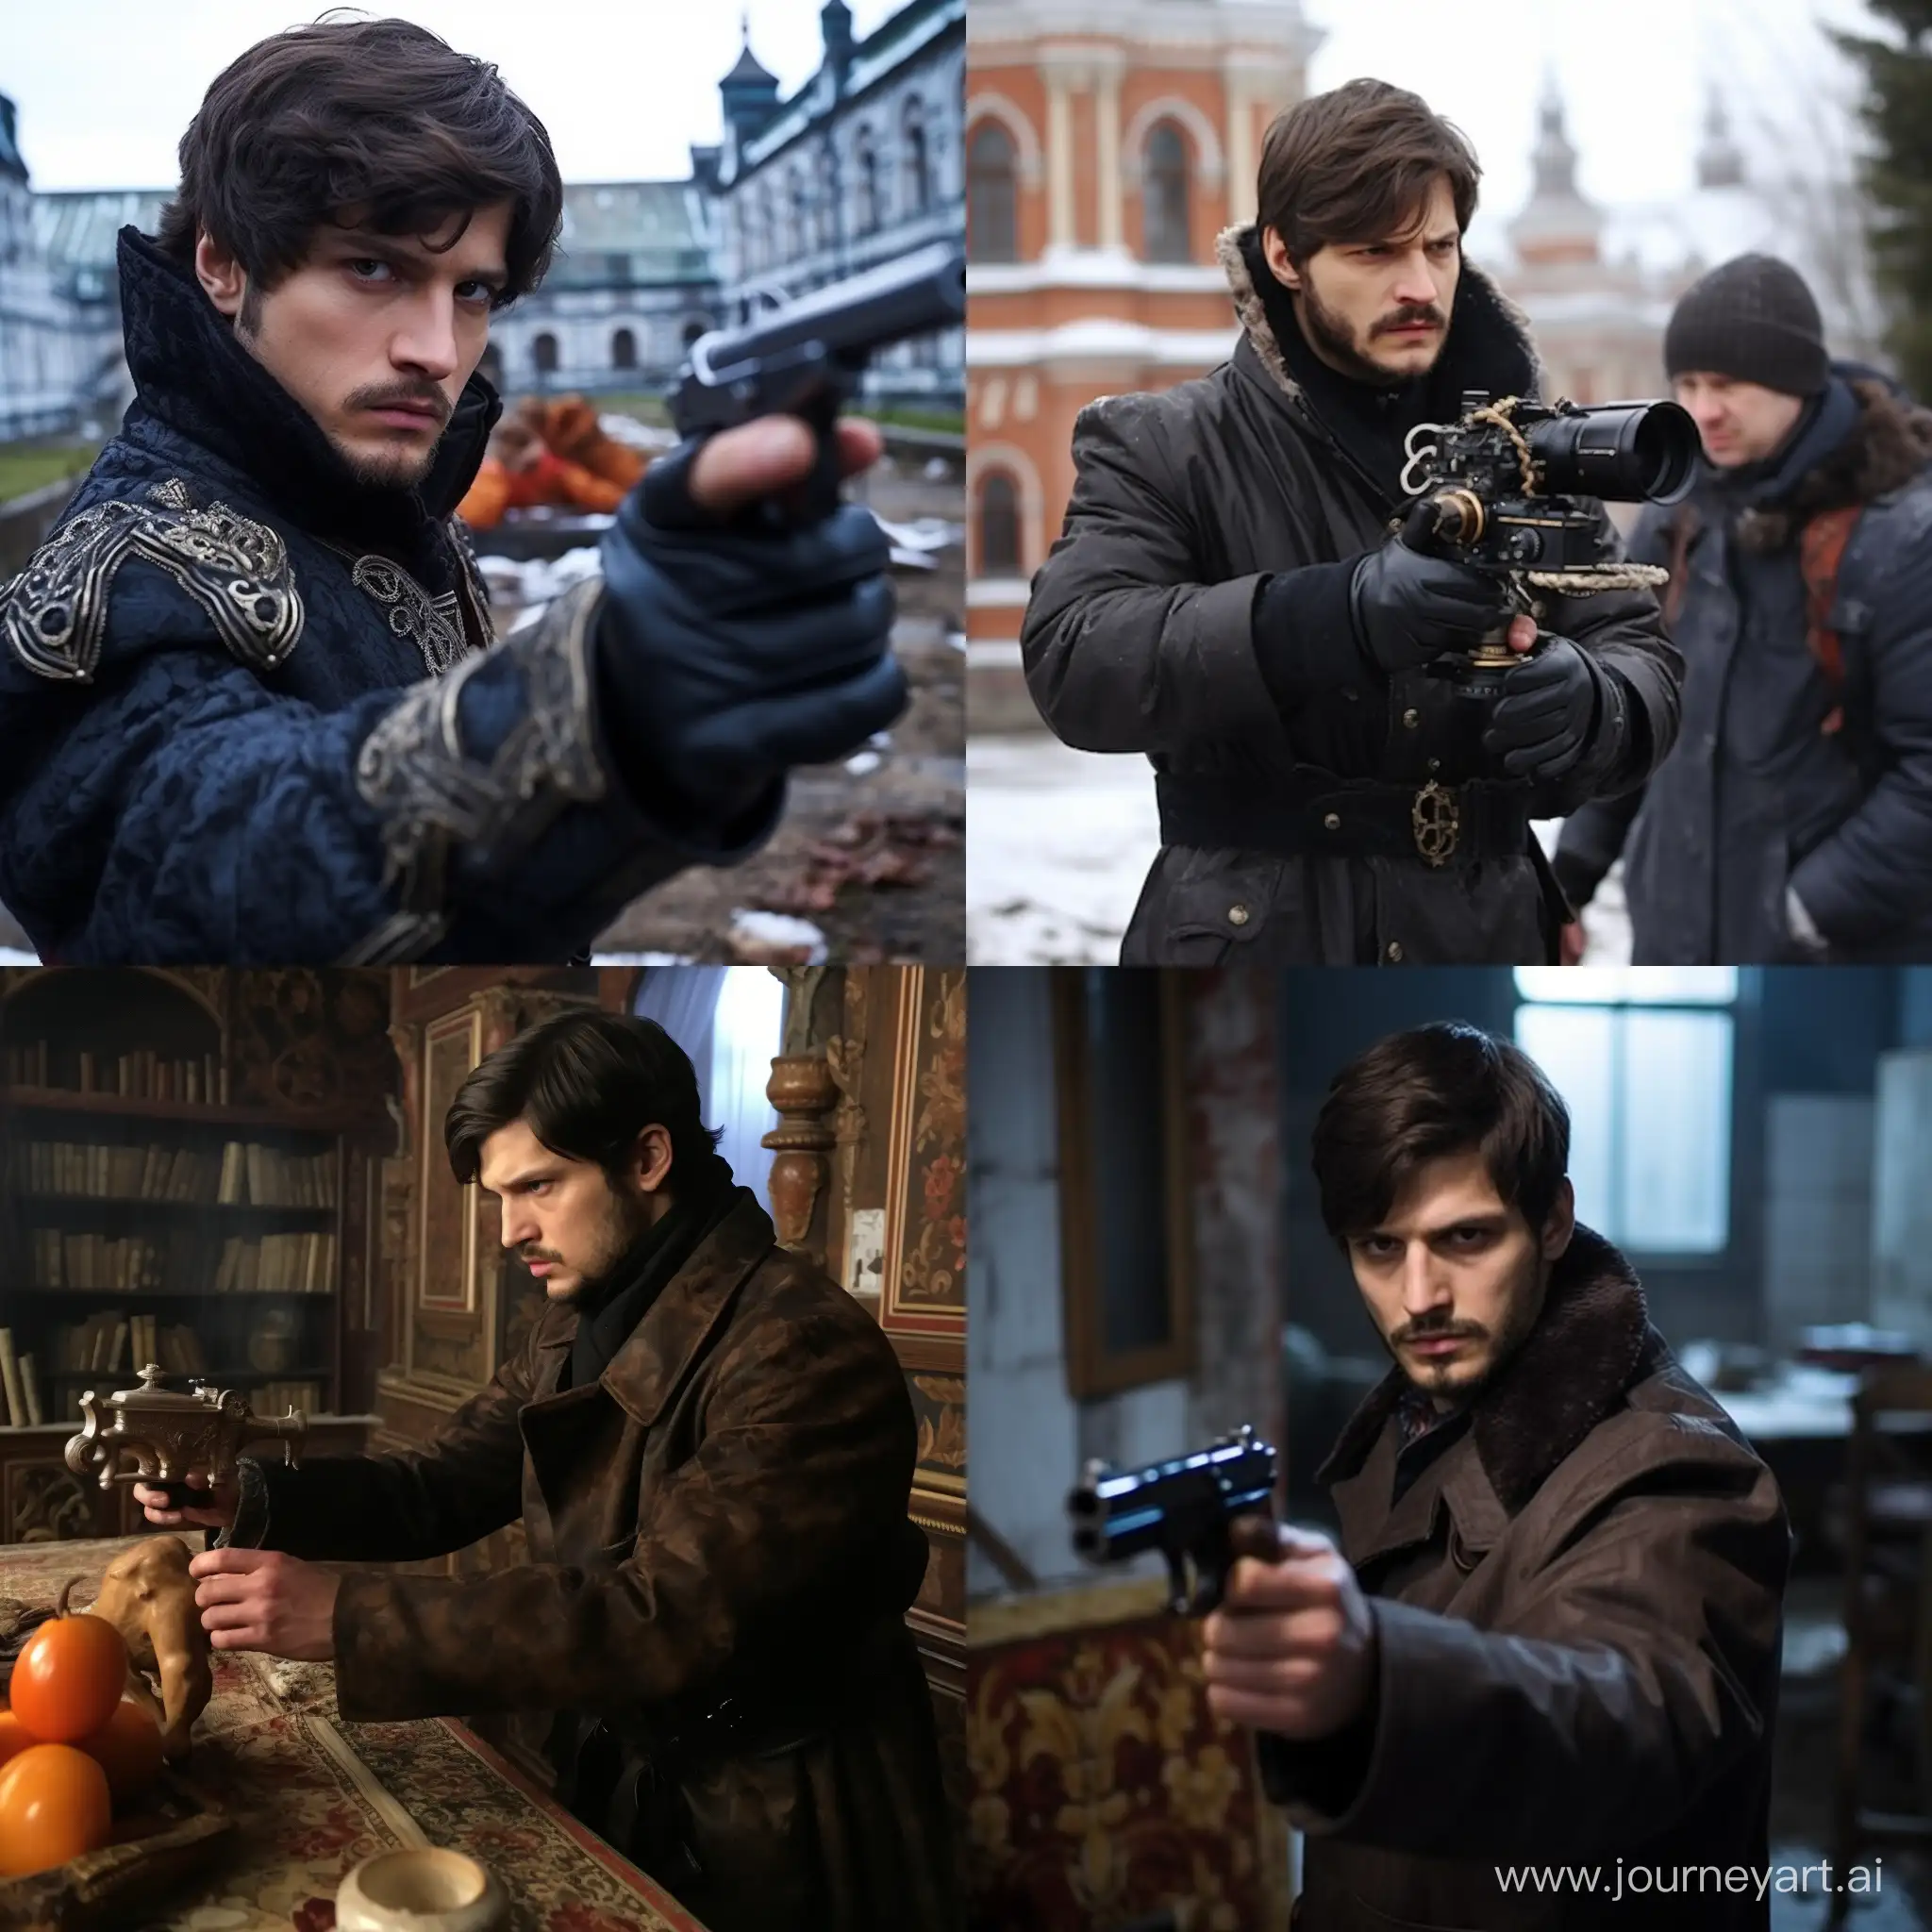 Ashton-Kutcher-and-Danila-Bagrov-in-Dramatic-St-Petersburg-Revolver-Scene